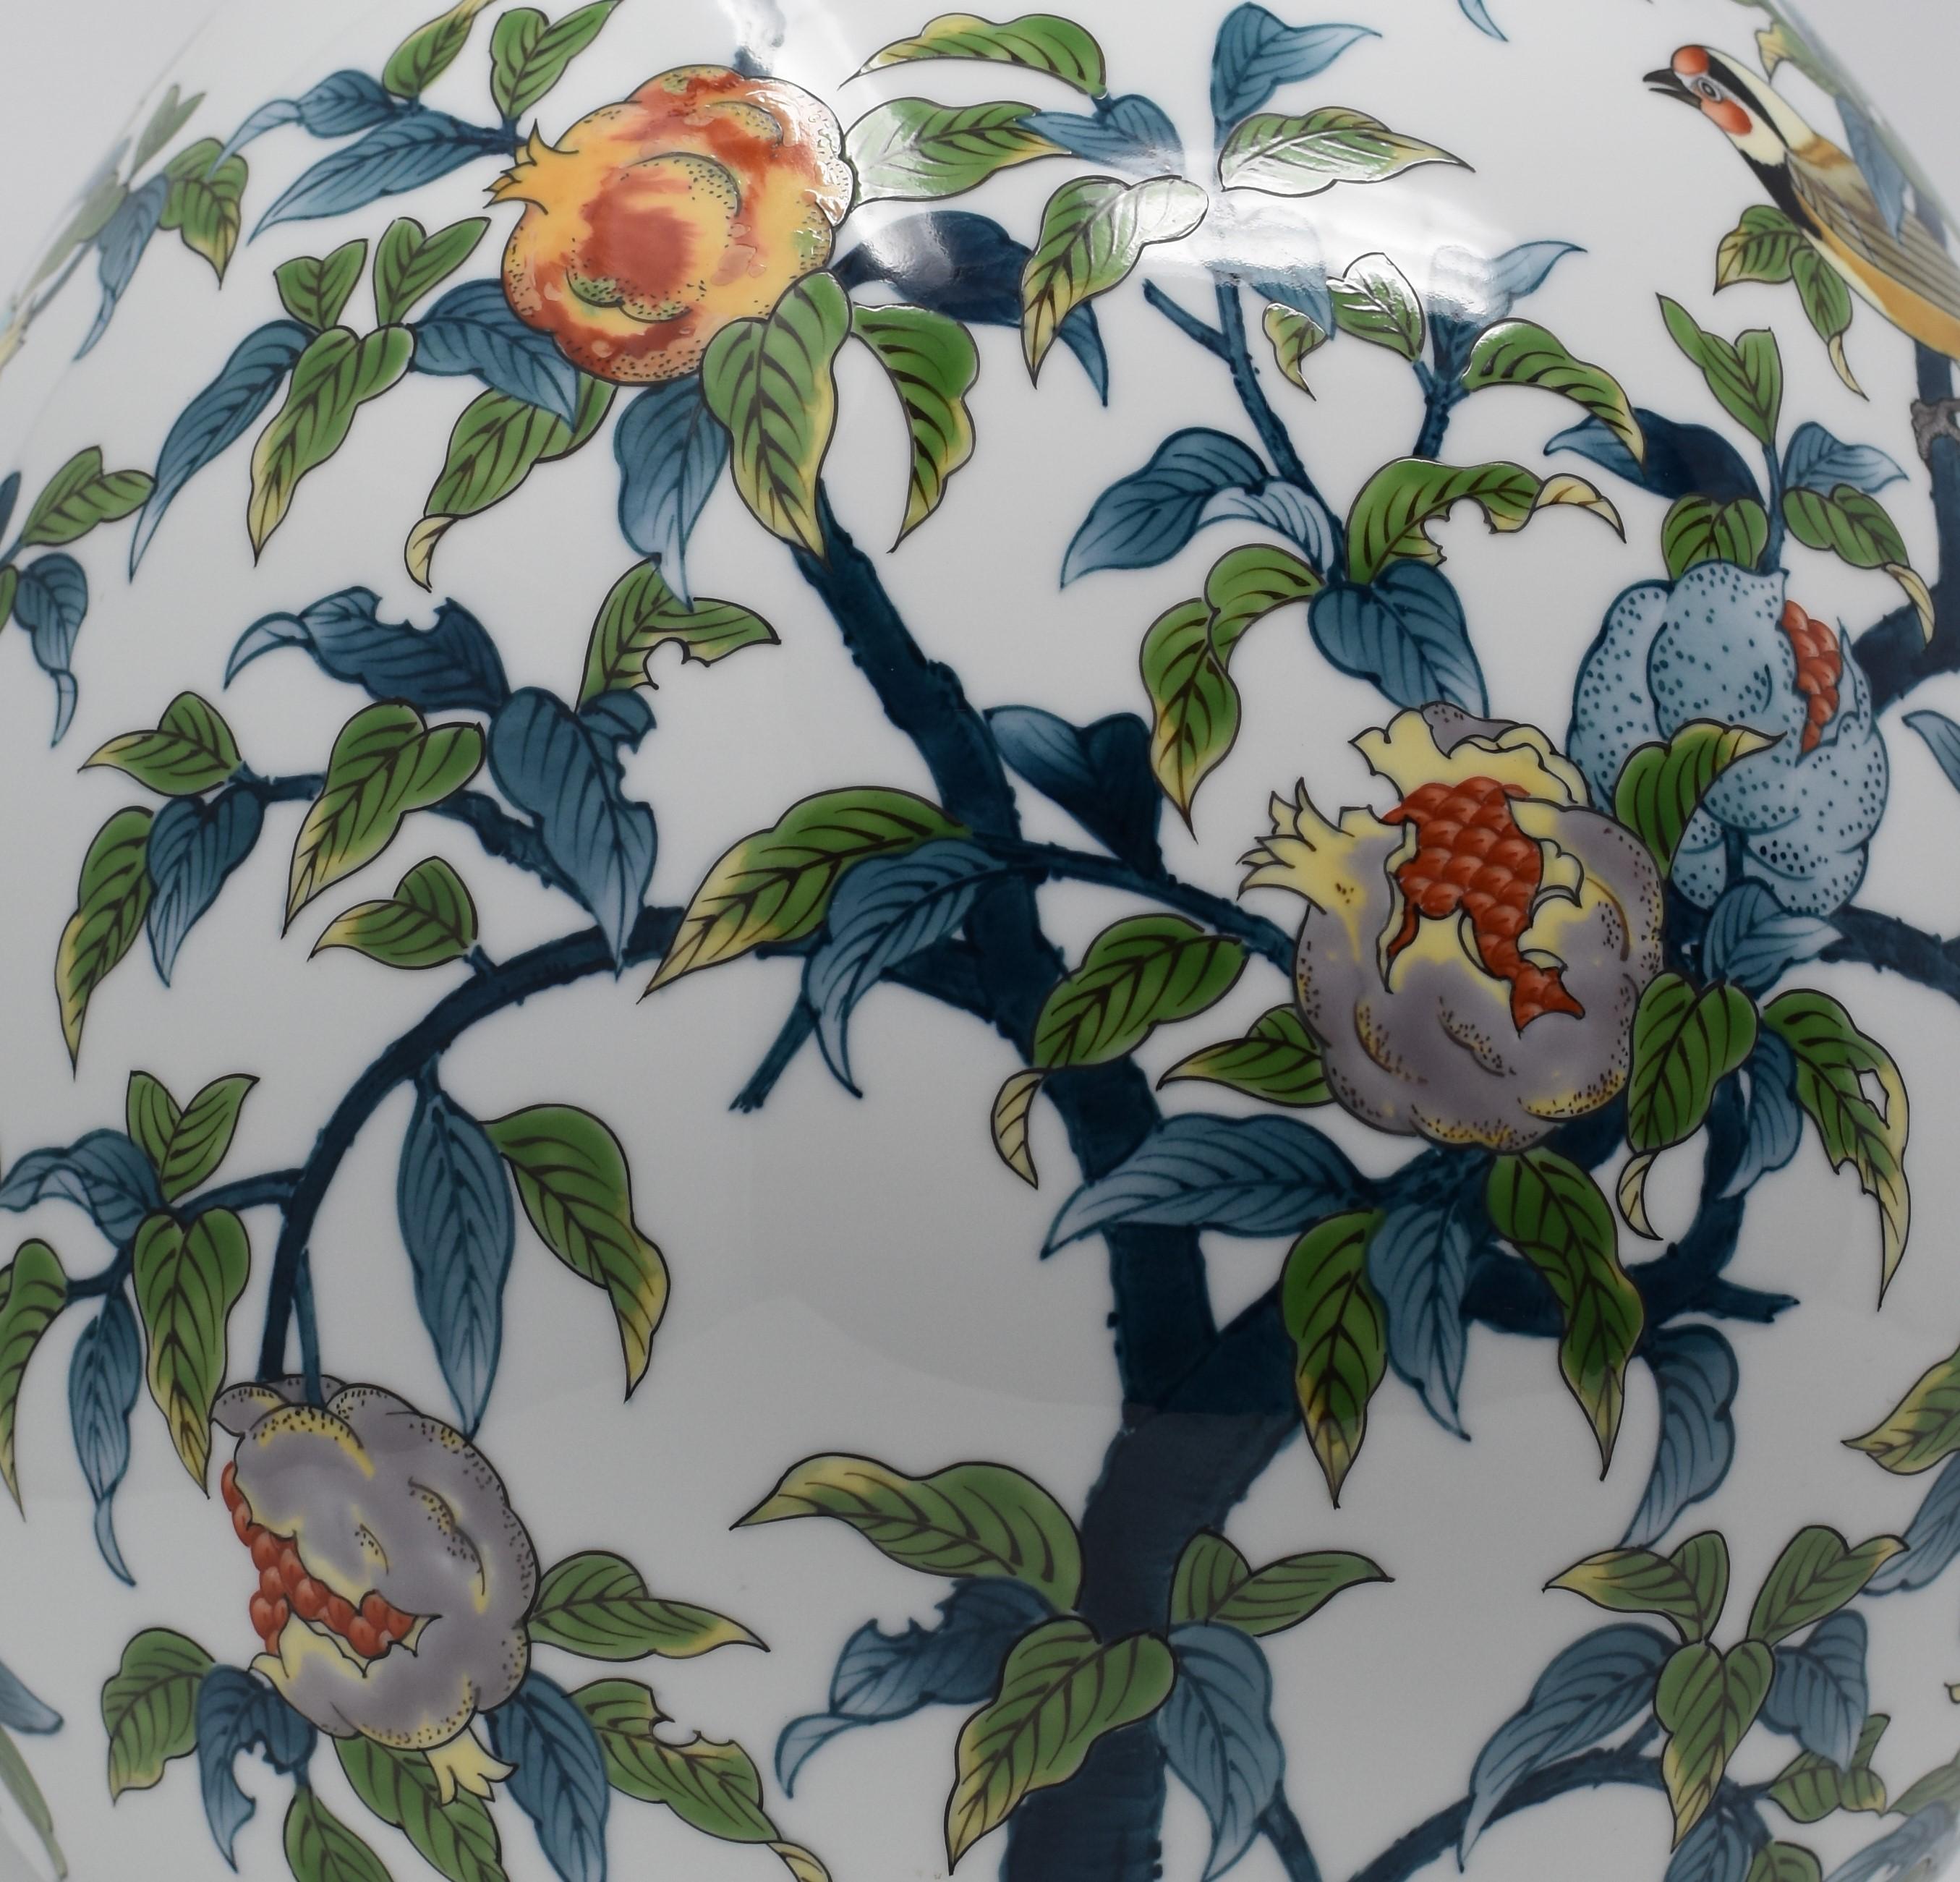  Contempory Imari Large Japanese Decorative Porcelain Vase by Master Artist 3